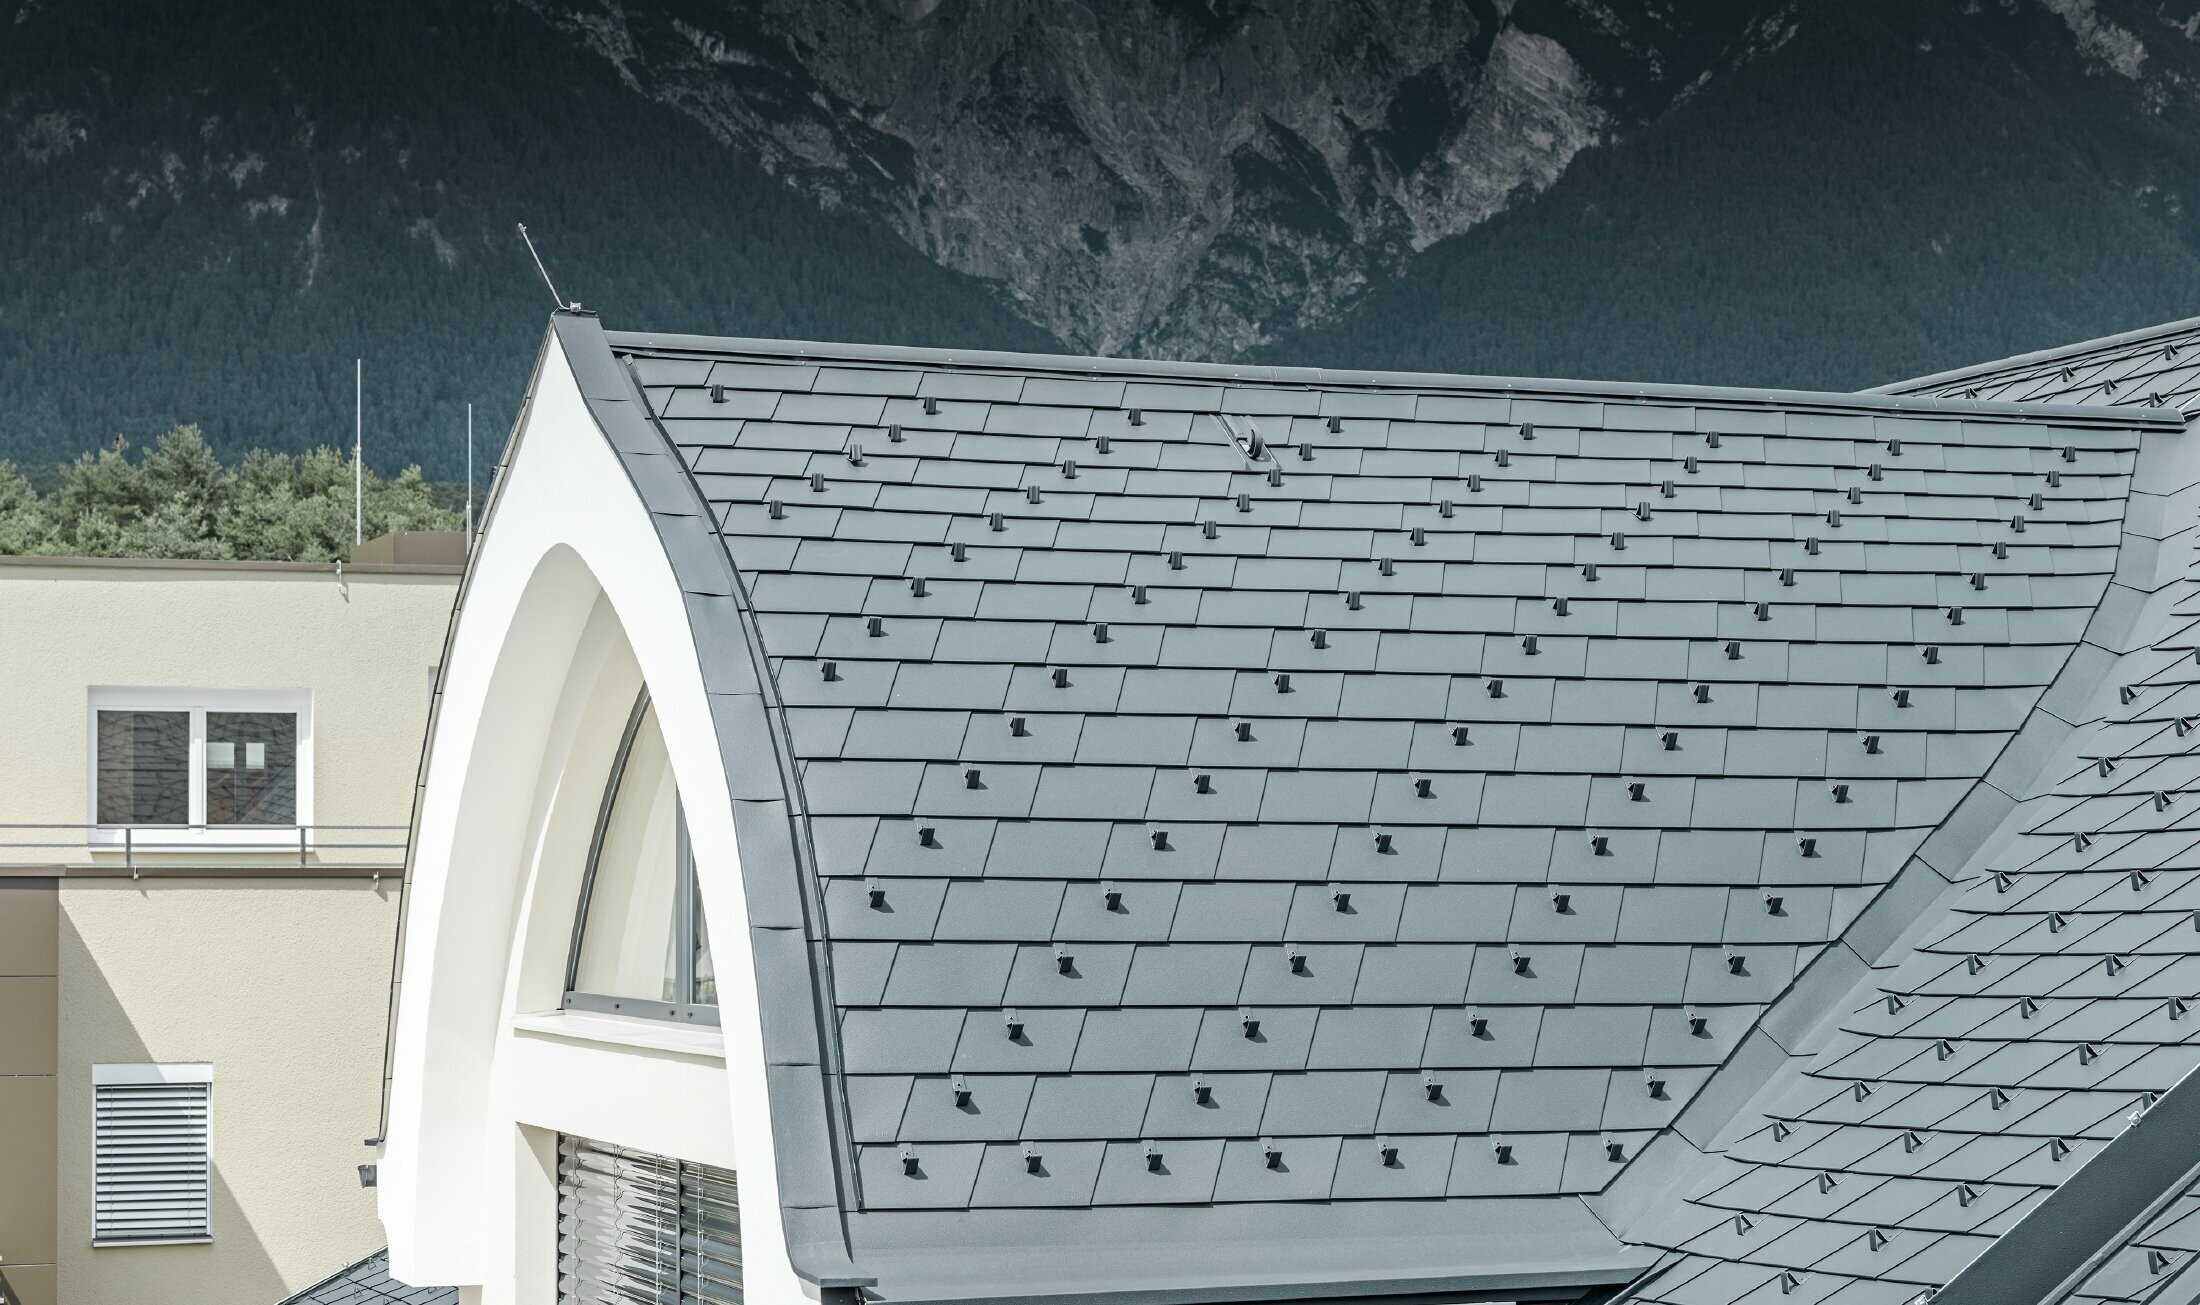 Snimka detalja šiljasto bačvaste krovne kućice, pokrivene PREFA krovnom šindrom u antracit boji; Krovna kućica ovdje je izvedena kao šiljasto bačvasti krov.